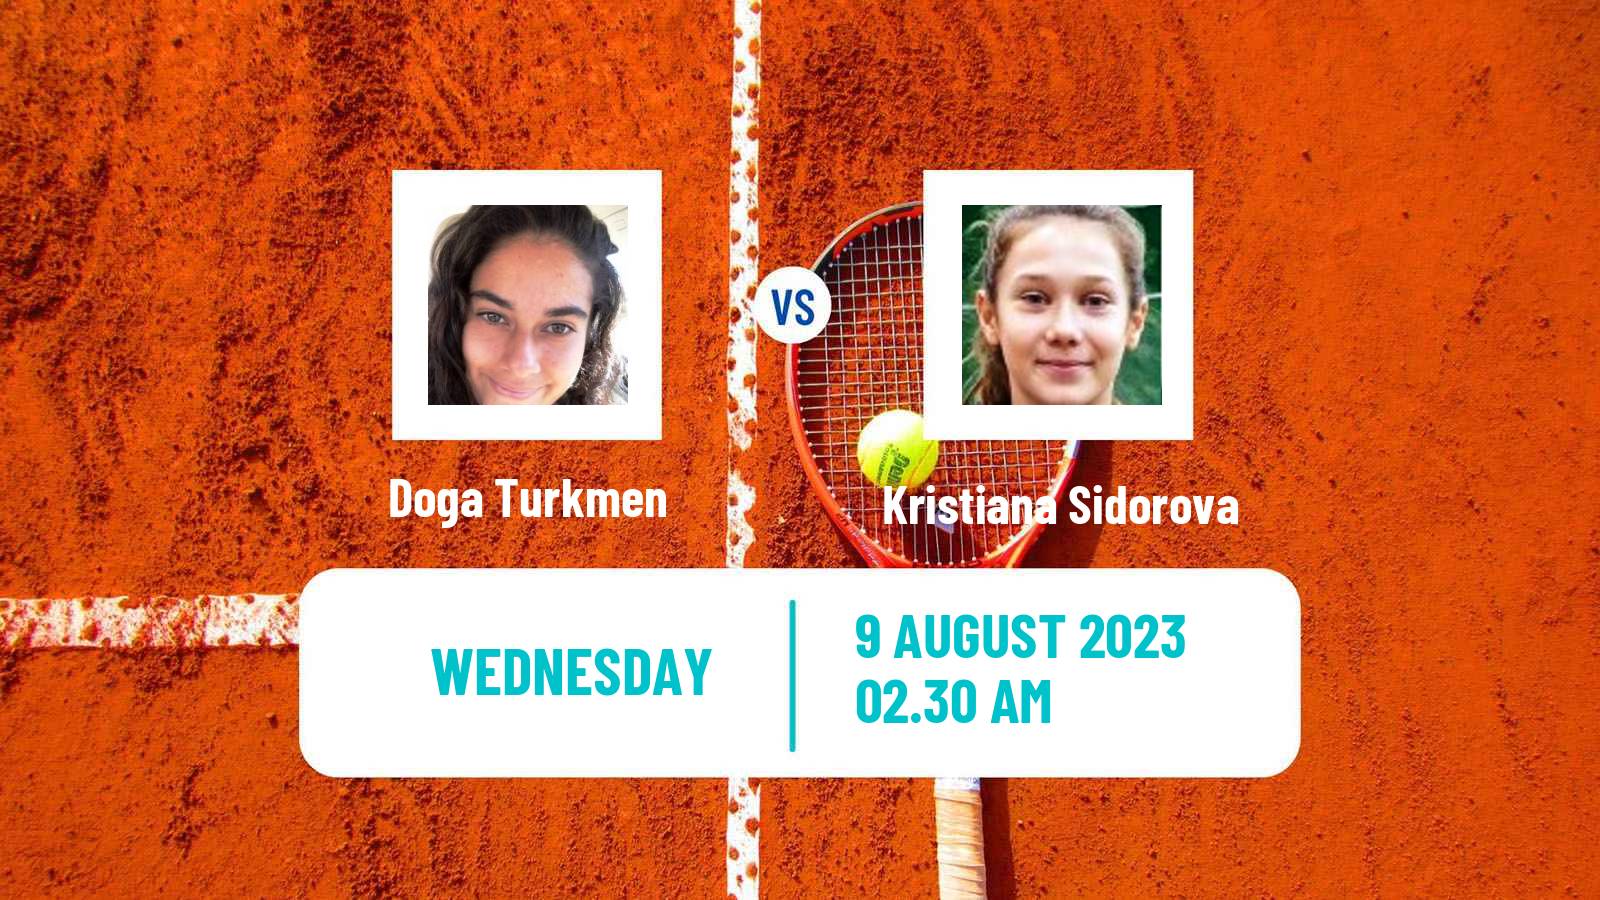 Tennis ITF W15 Tbilisi 2 Women Doga Turkmen - Kristiana Sidorova